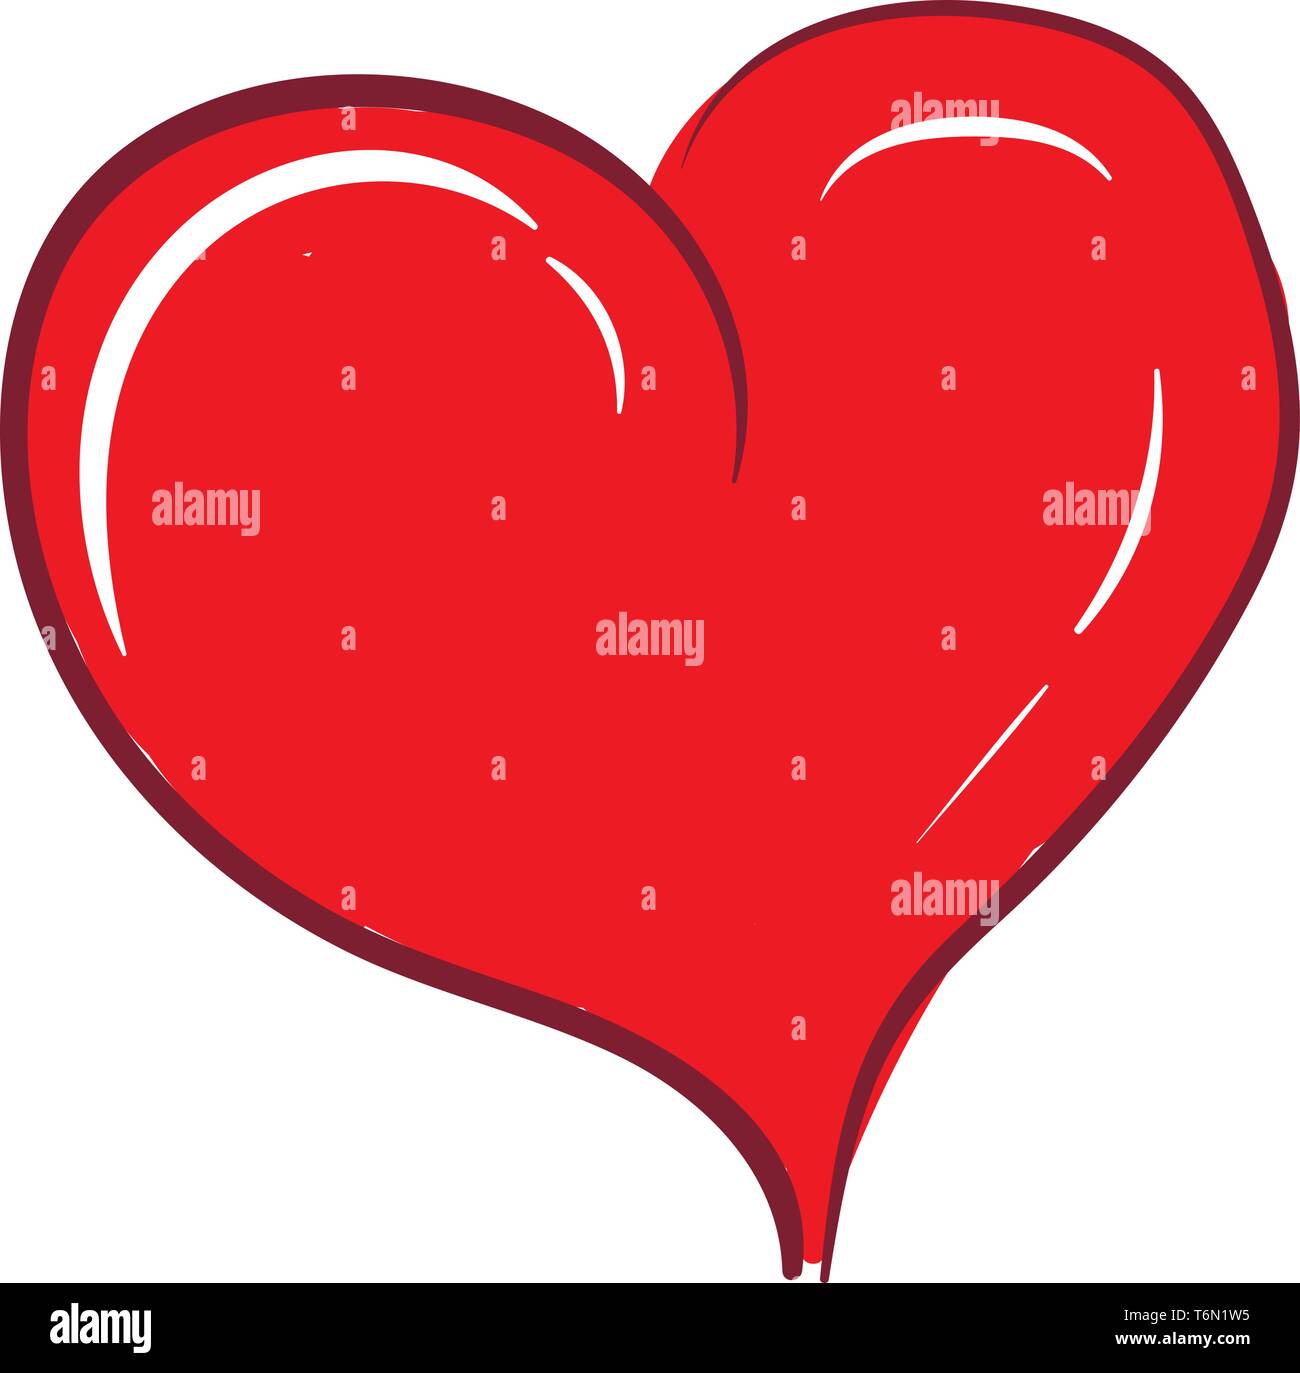 Clipart Von Einer Kurvigen Rotes Herz Mit Weissen Ausrufezeichen Als Symbol Der Liebe Vector Farbe Zeichnung Oder Abbildung Als Stock Vektorgrafik Alamy